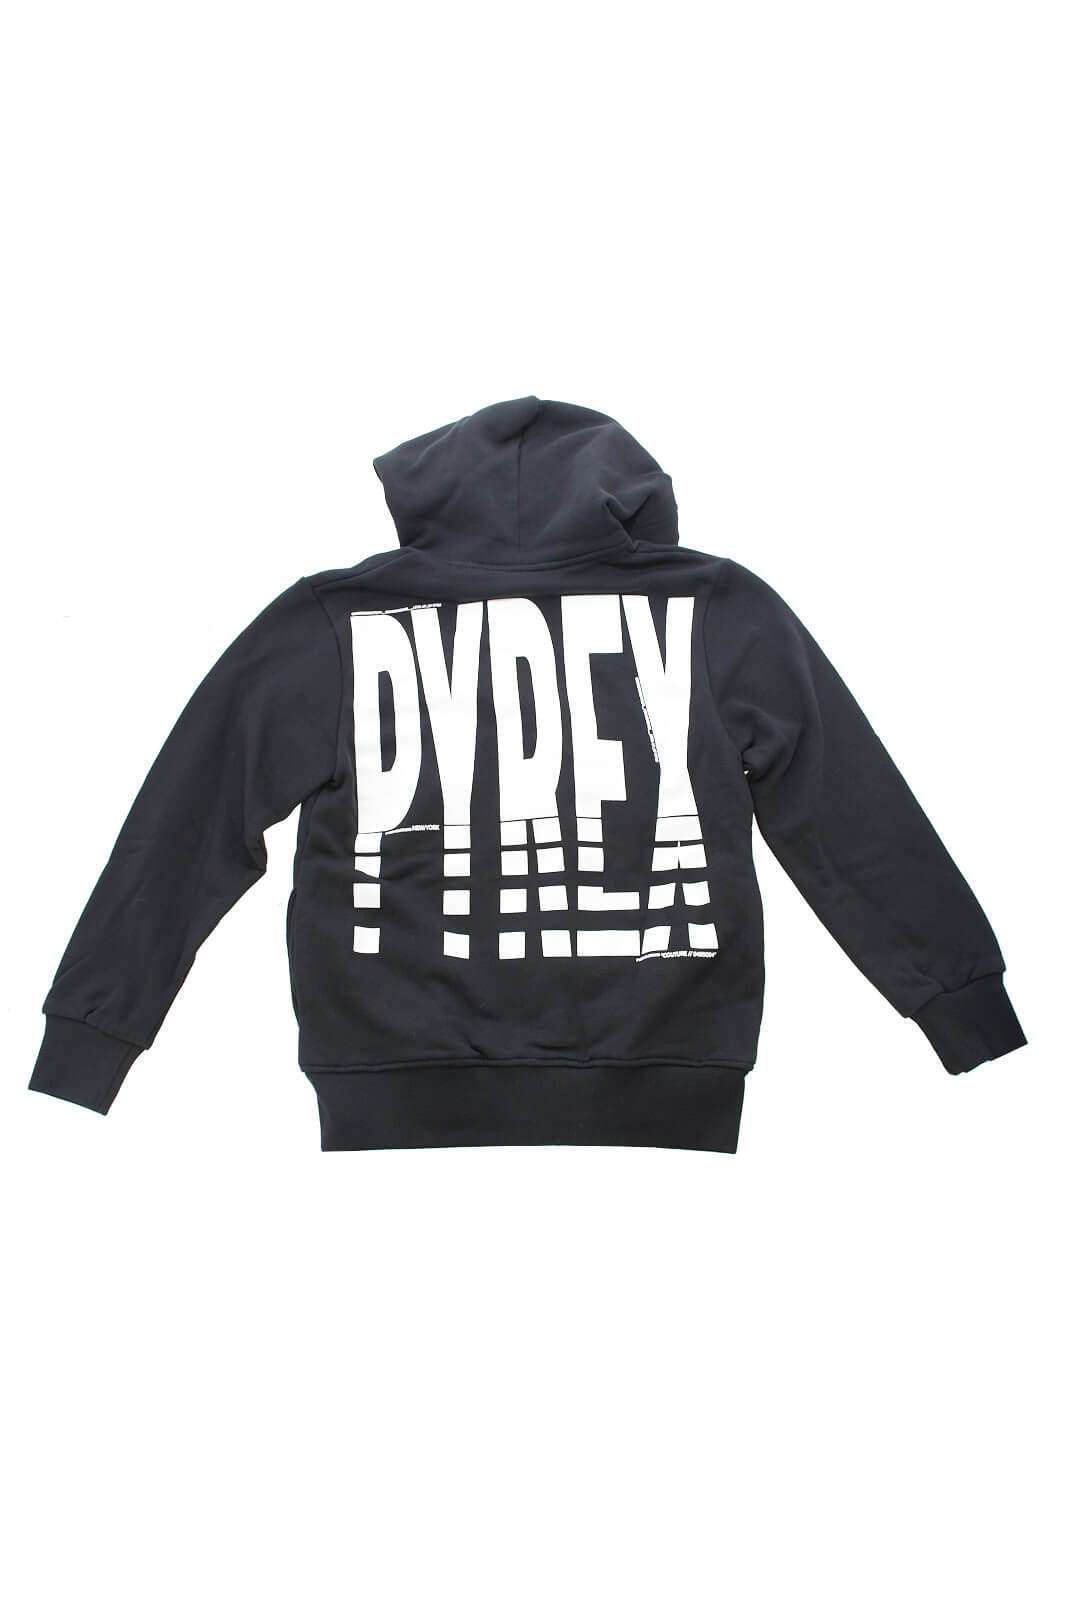 Pyrex Children's sweatshirt with white logo